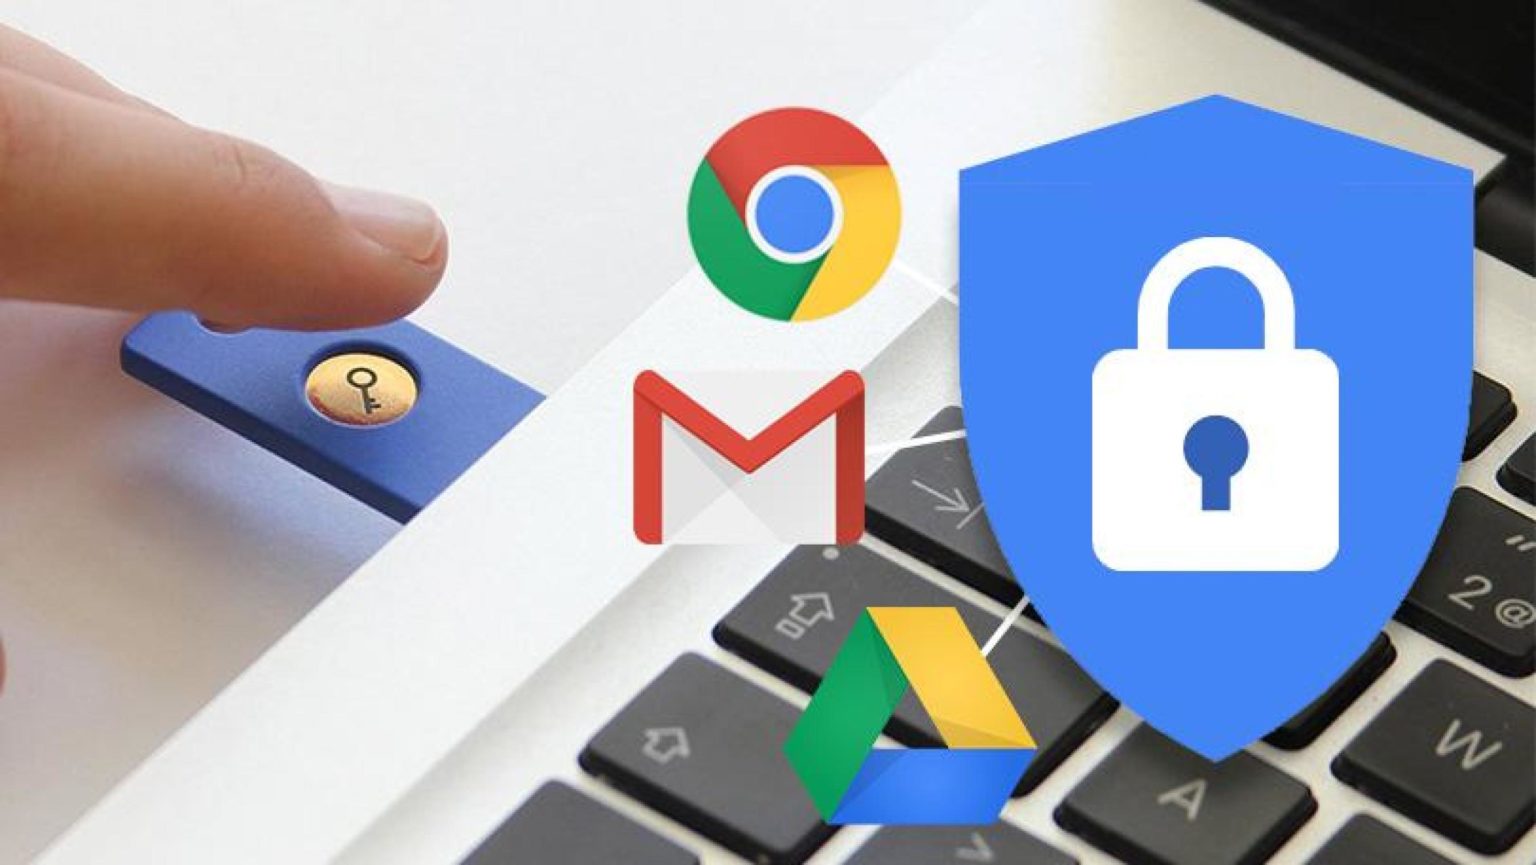 خدمة جديدة من غوغل لحماية بيانات وخصوصية المُستخدمين